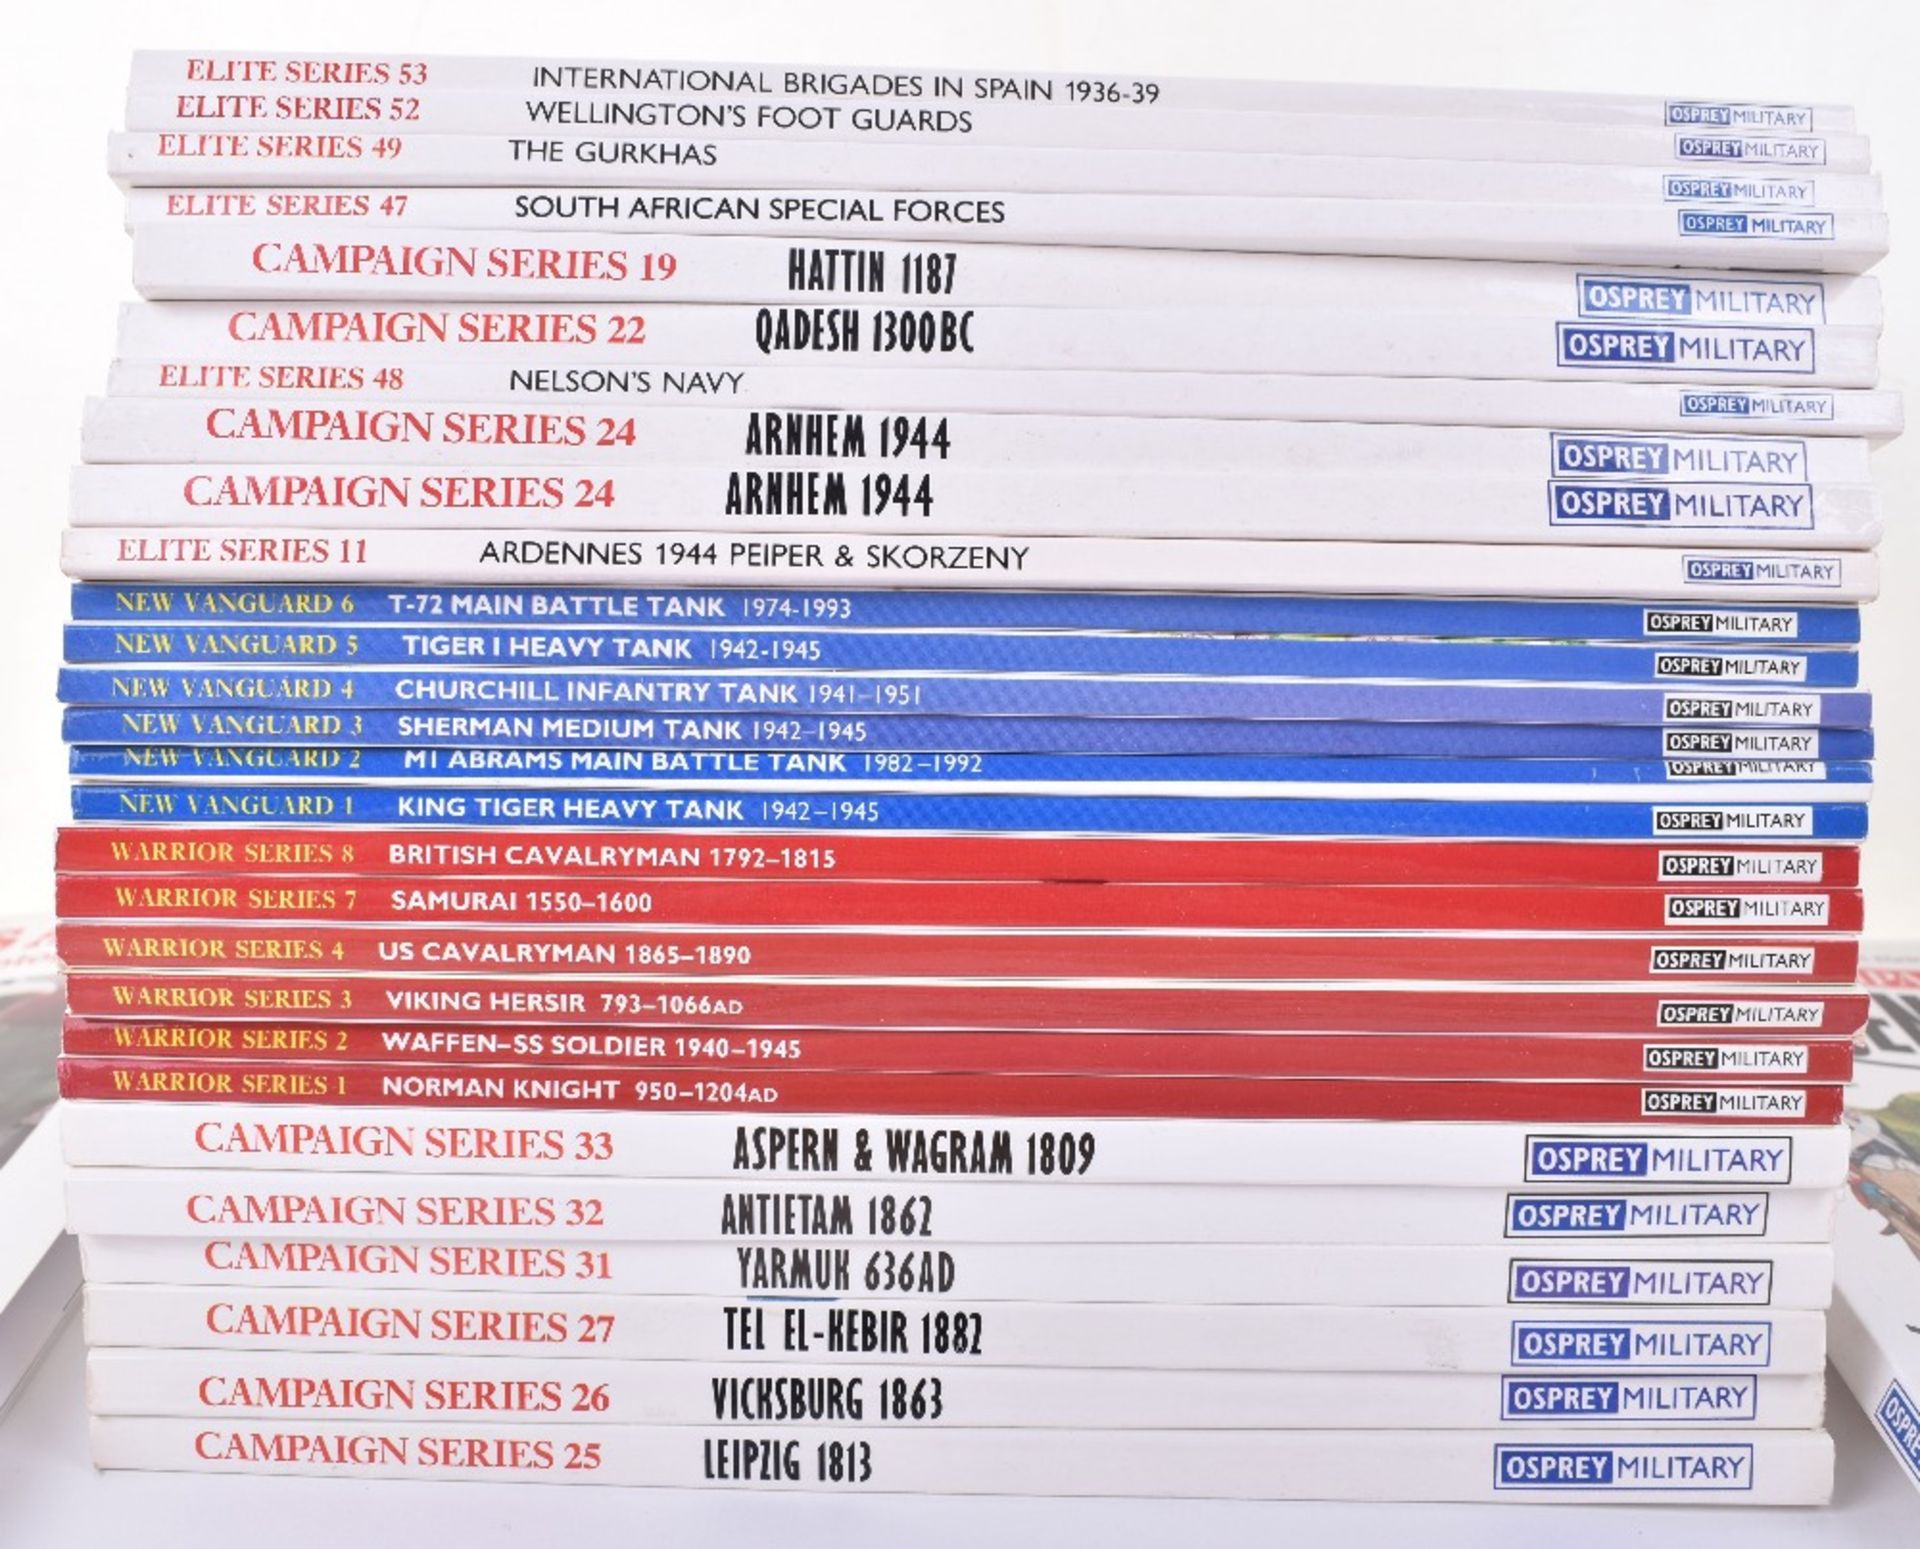 32x Osprey Publication Books - Image 2 of 2